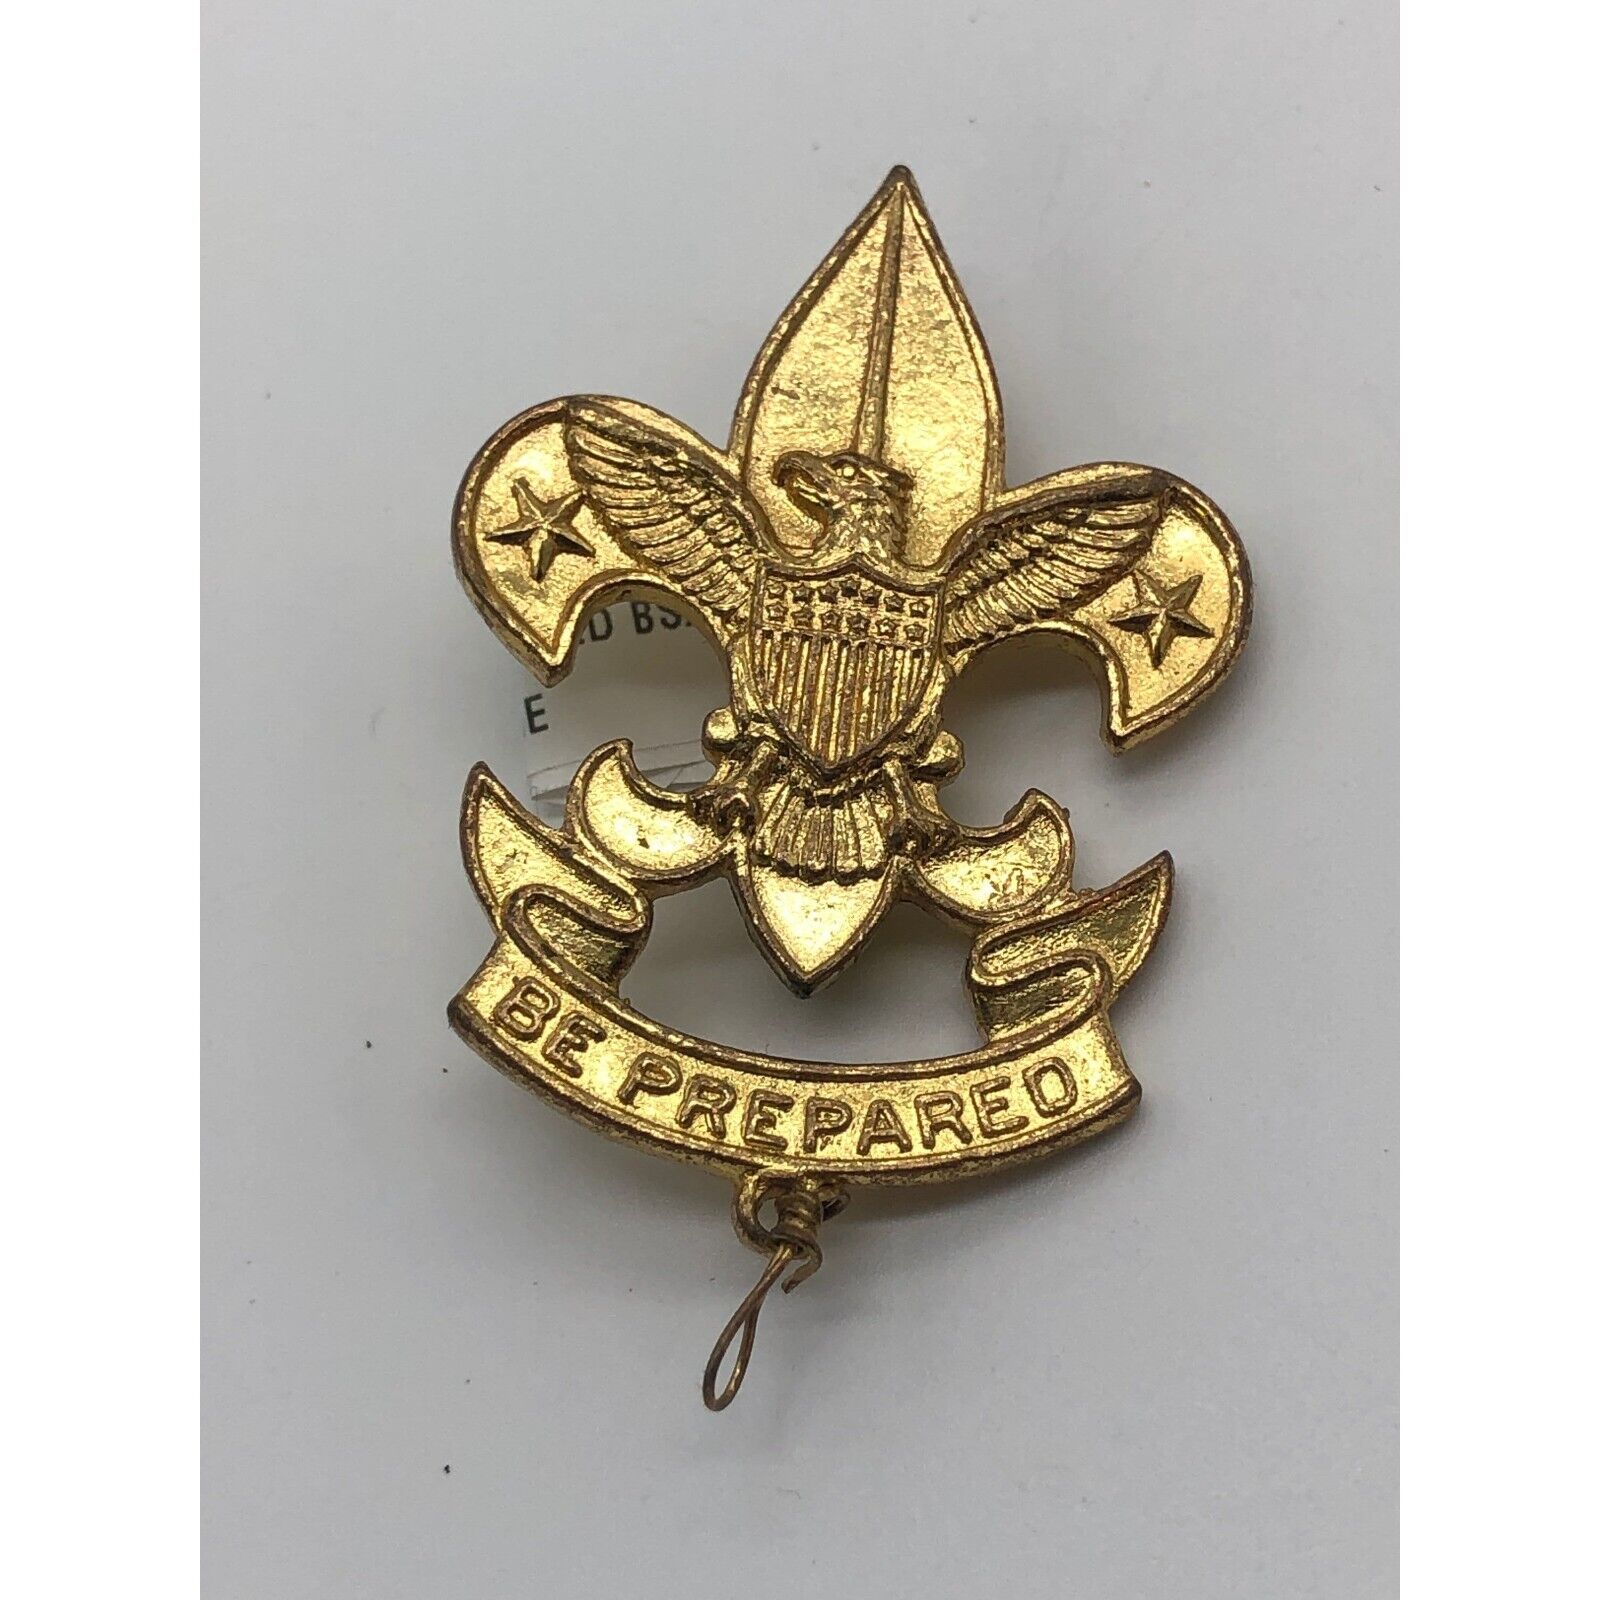 Antique 1970s BSA Boy Scouts of America Badge Fleur-de-lis